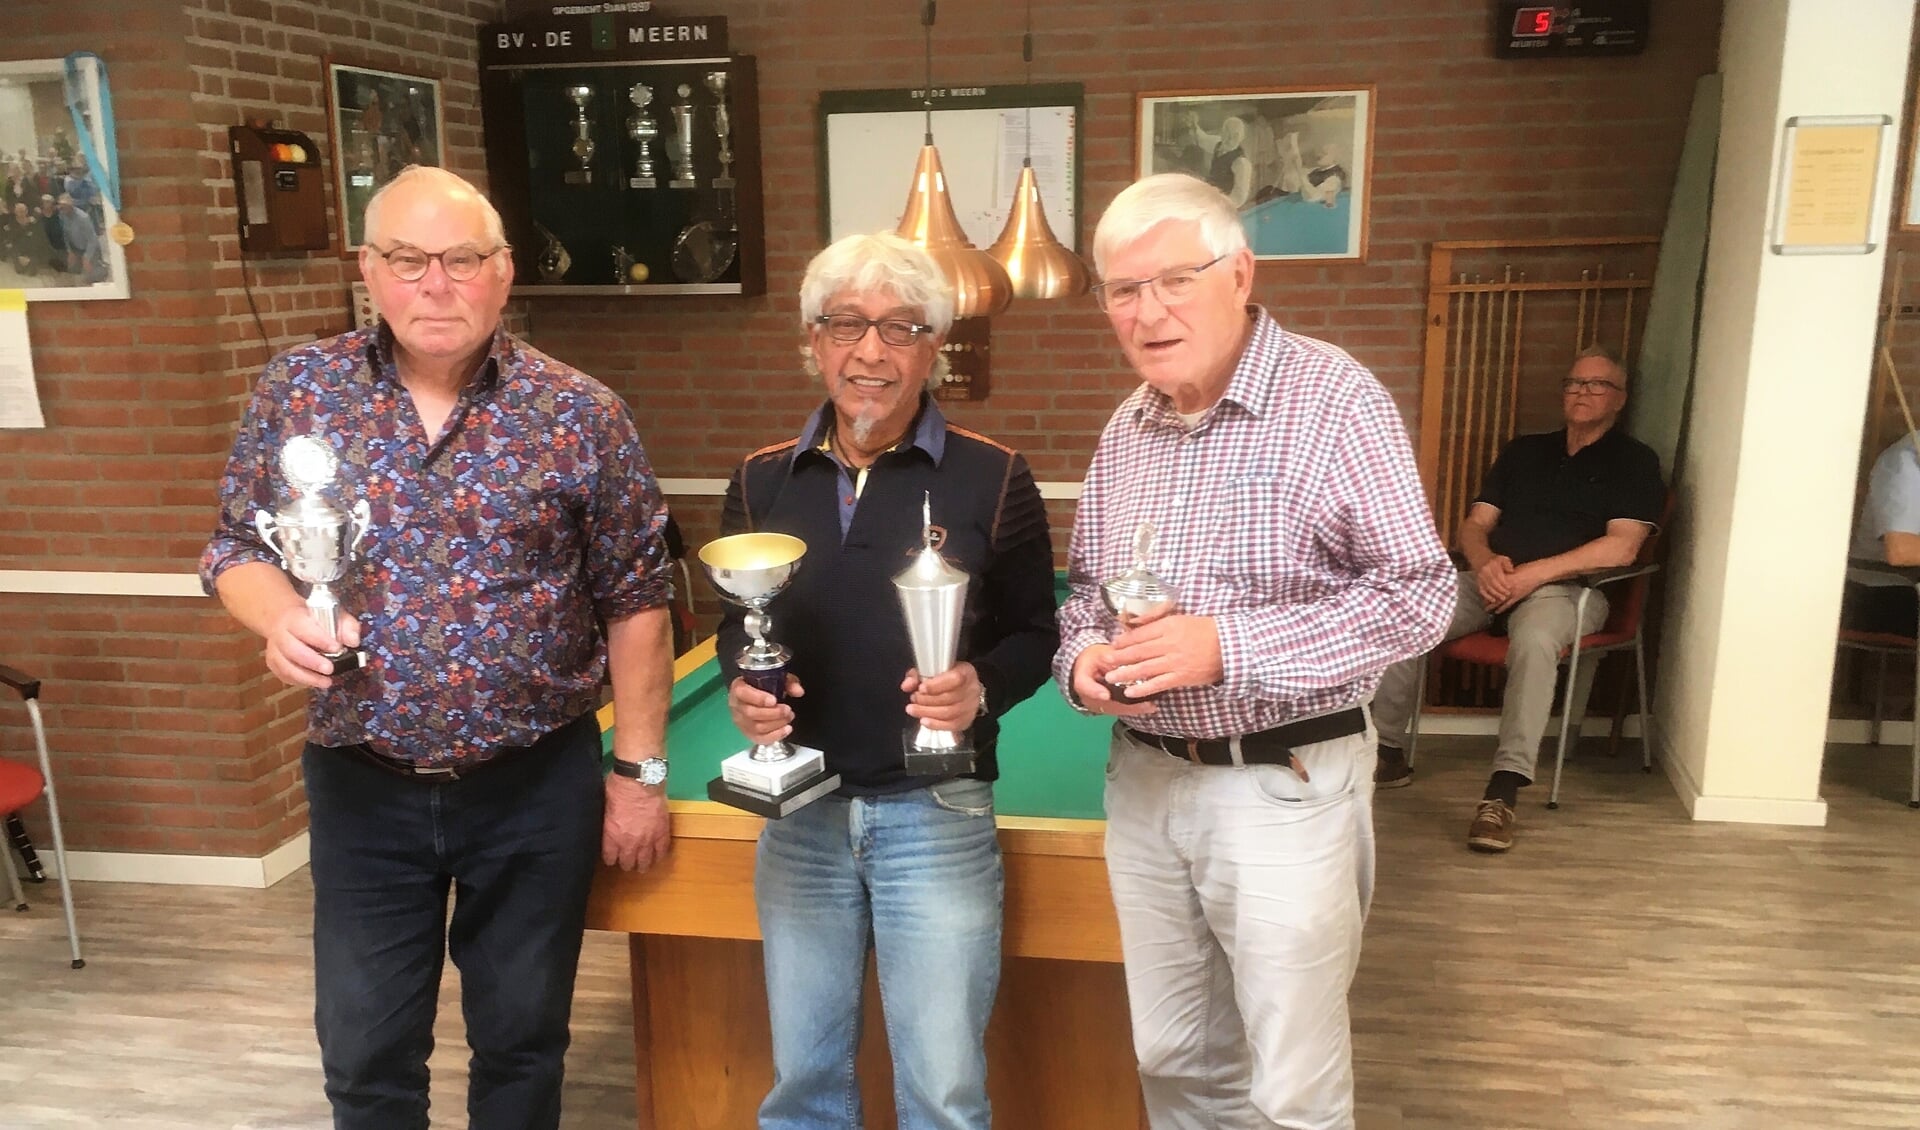 V.l.n.r. Jaap de Koff, Joseph Latuny en Bert Kraaijeveld